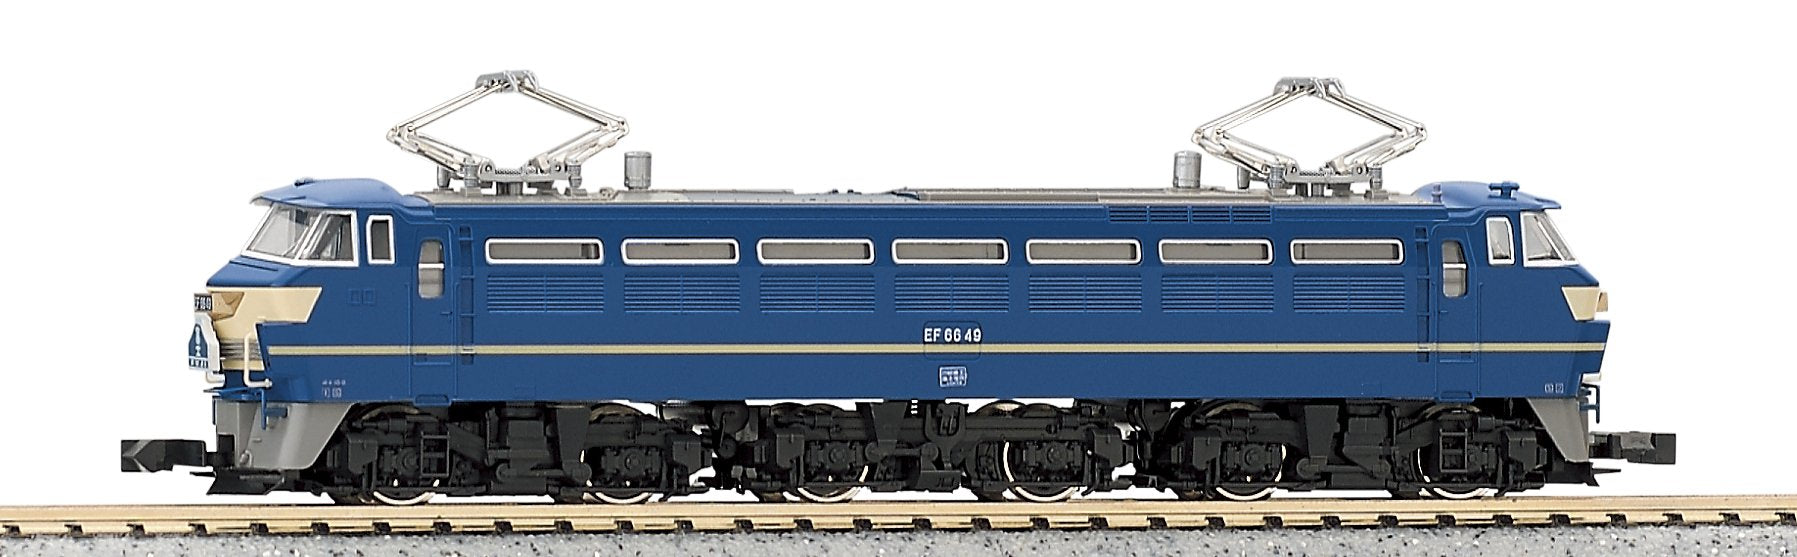 Kato Ef66 Late Type 3047 Railway Model Electric Locomotive N Gauge